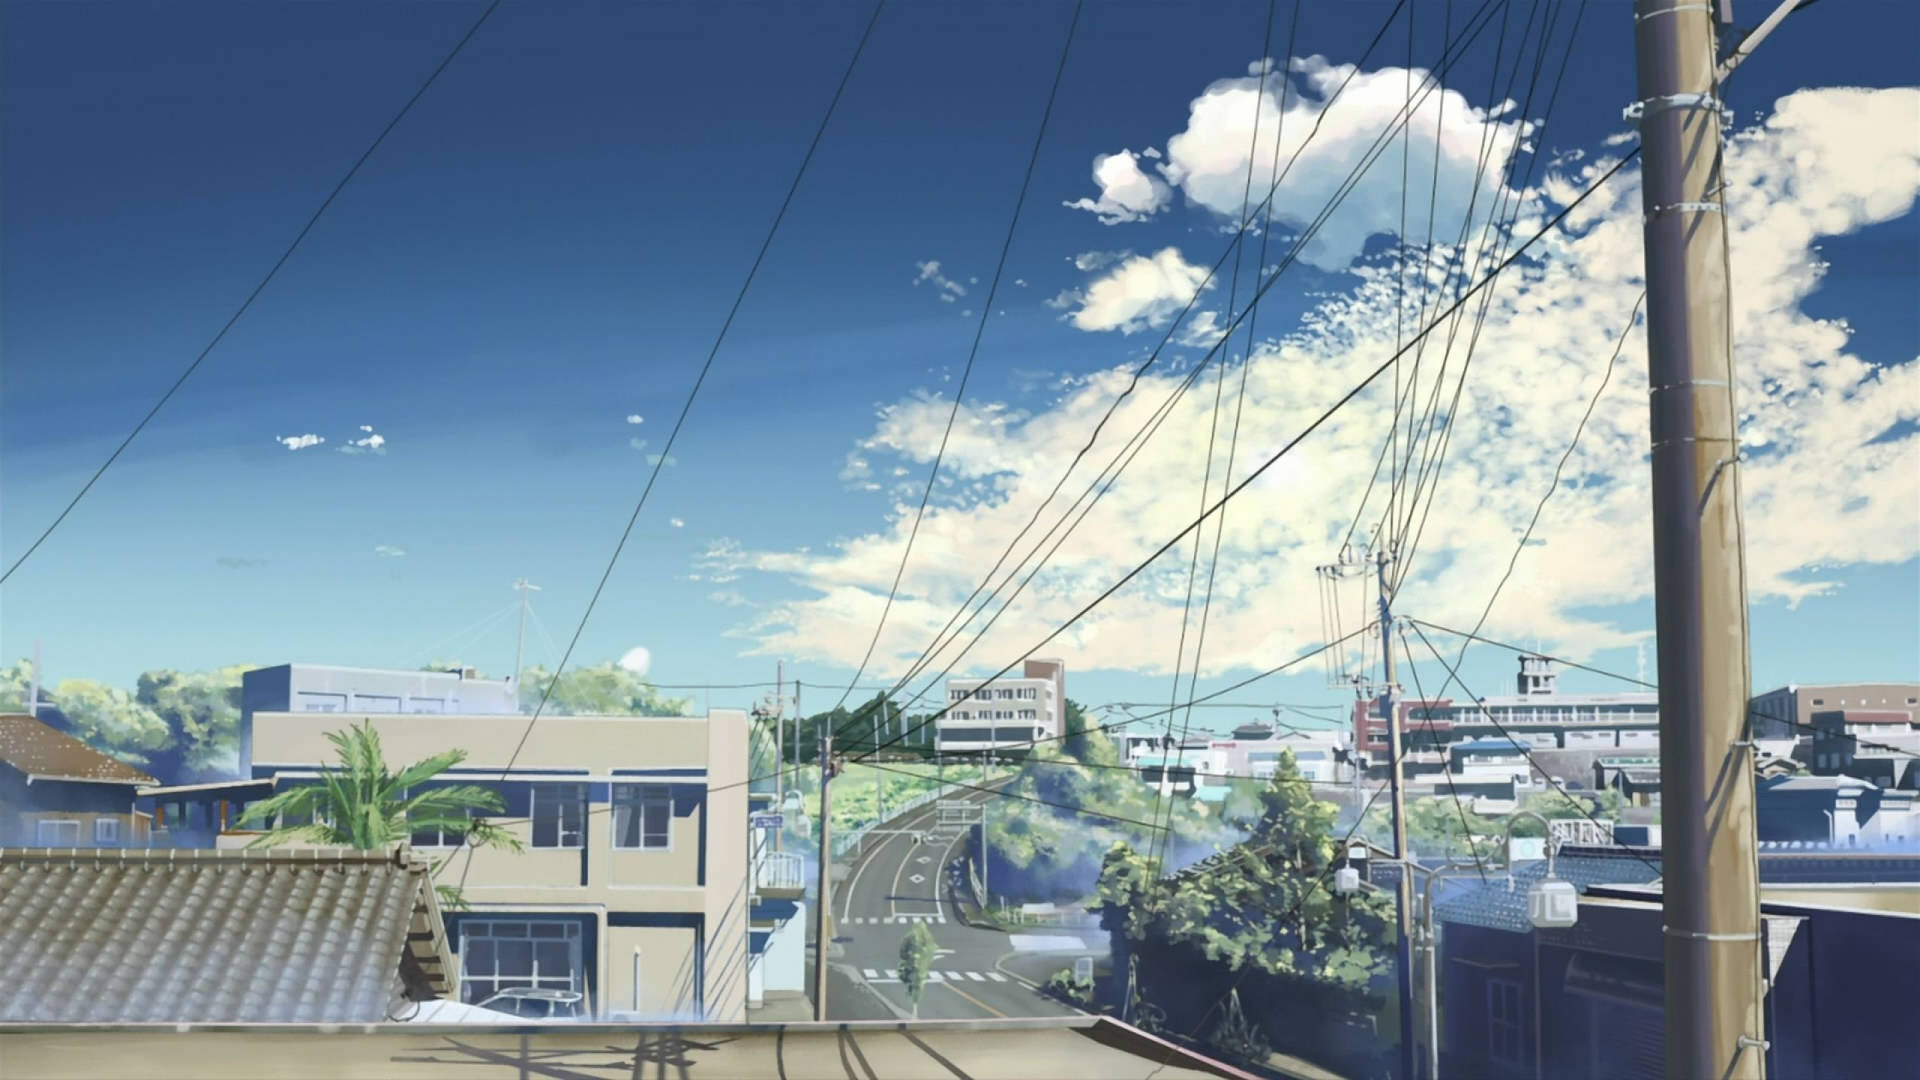 Aesthetic Anime Scenery: Paisaje Estético De Anime Fondo de pantalla